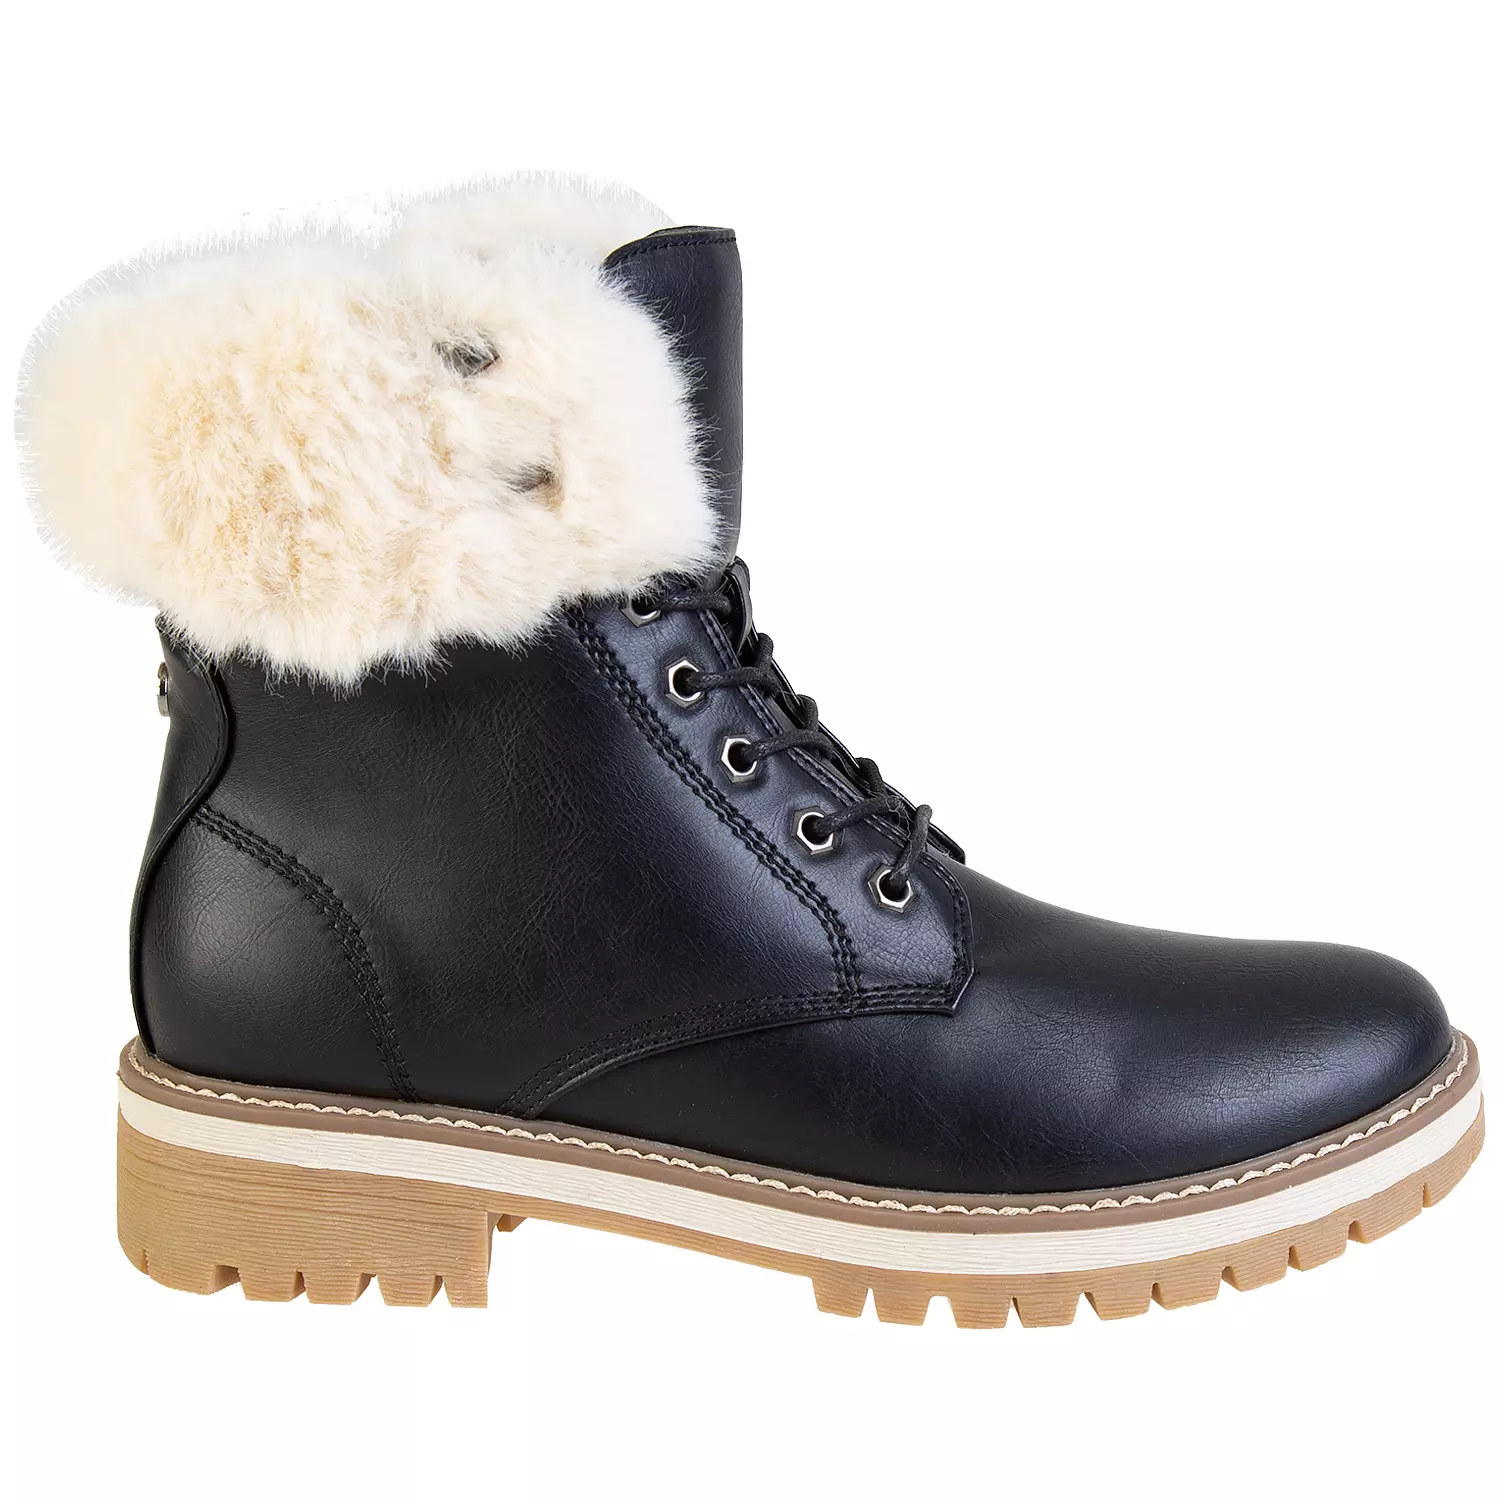 Lace-up faux fur trim fashion combat boots, black, size 6